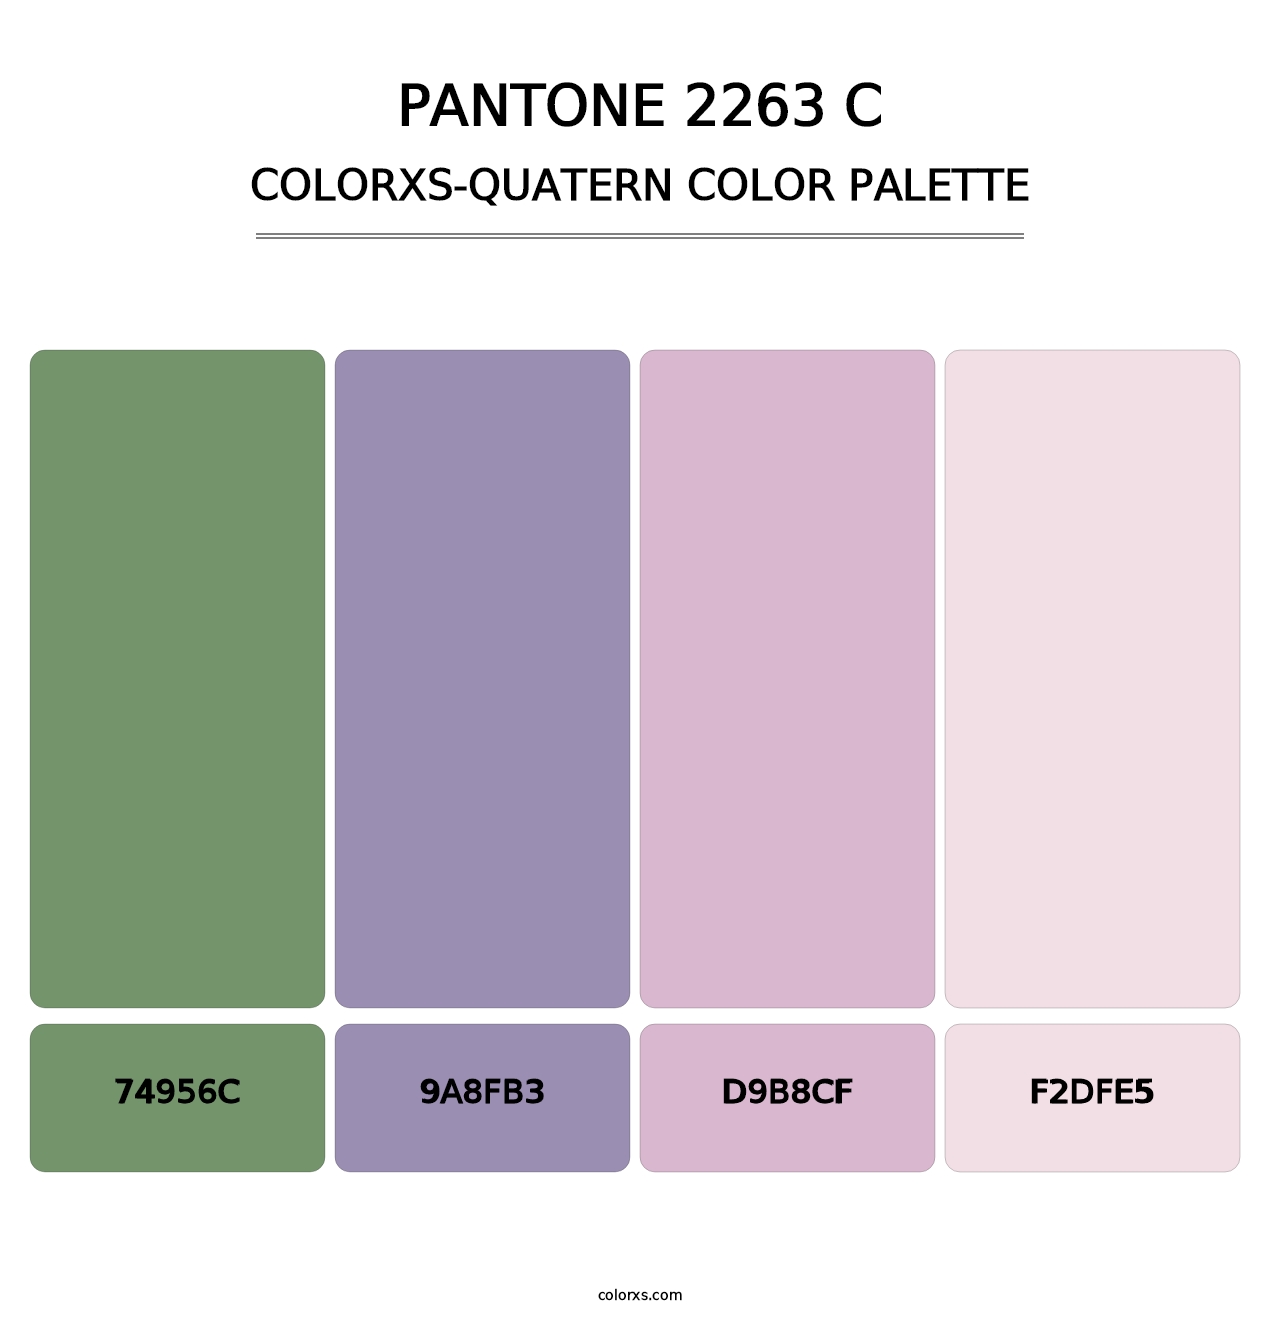 PANTONE 2263 C - Colorxs Quatern Palette